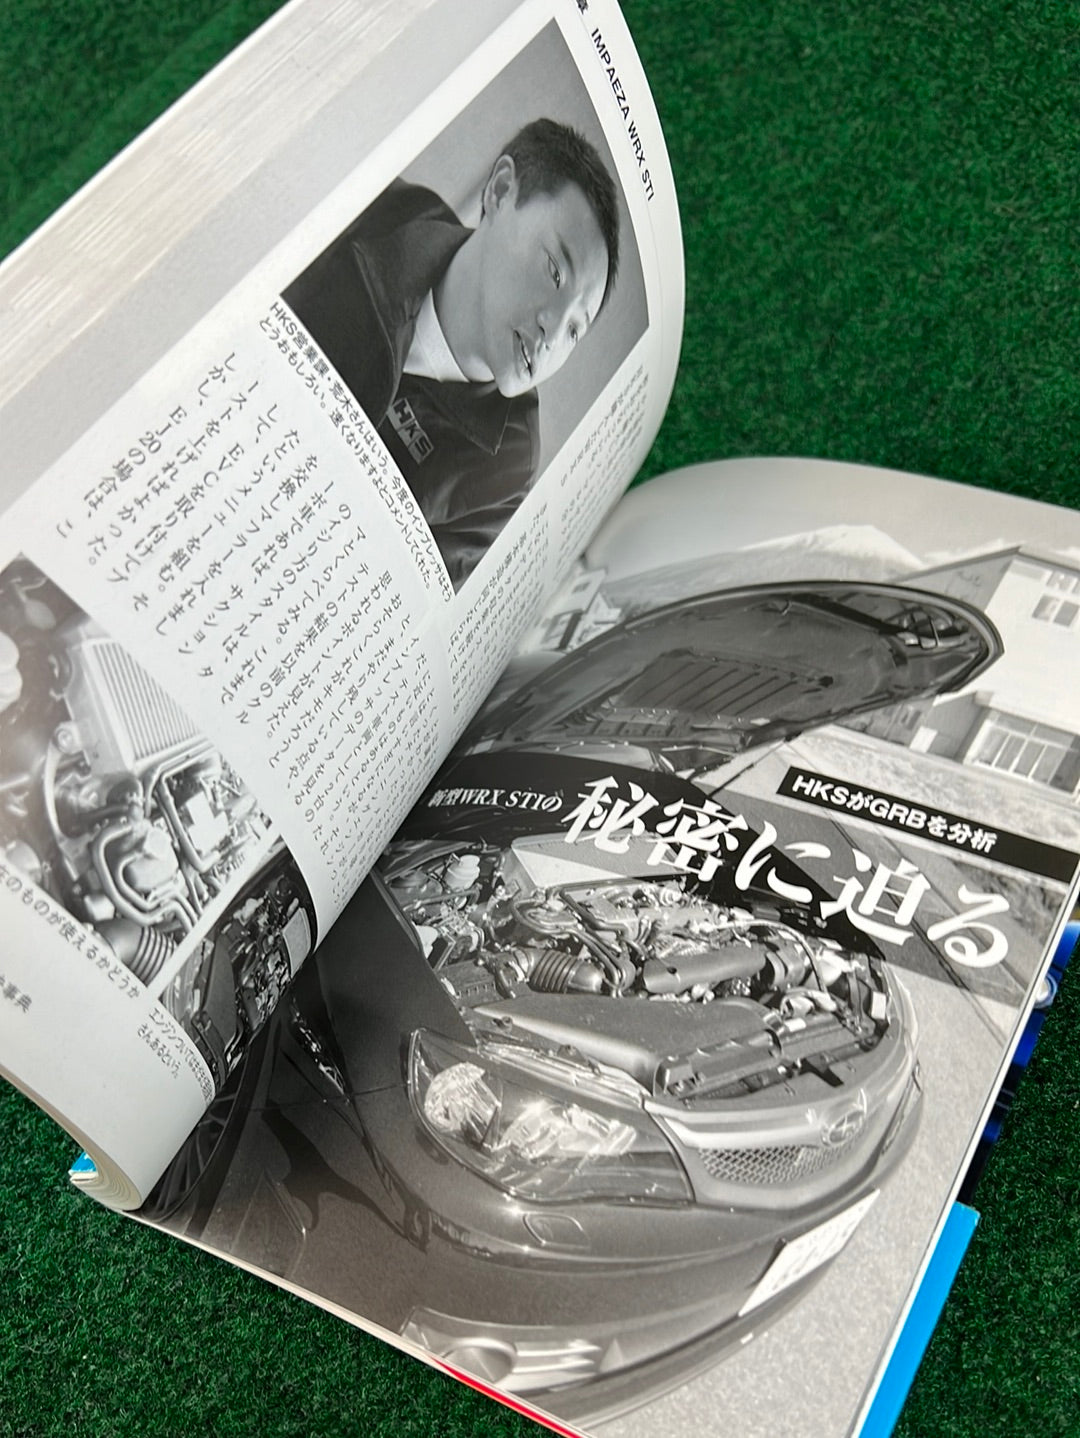 Subaru Impreza WRX Car Review and Maintenance Book Set of 2